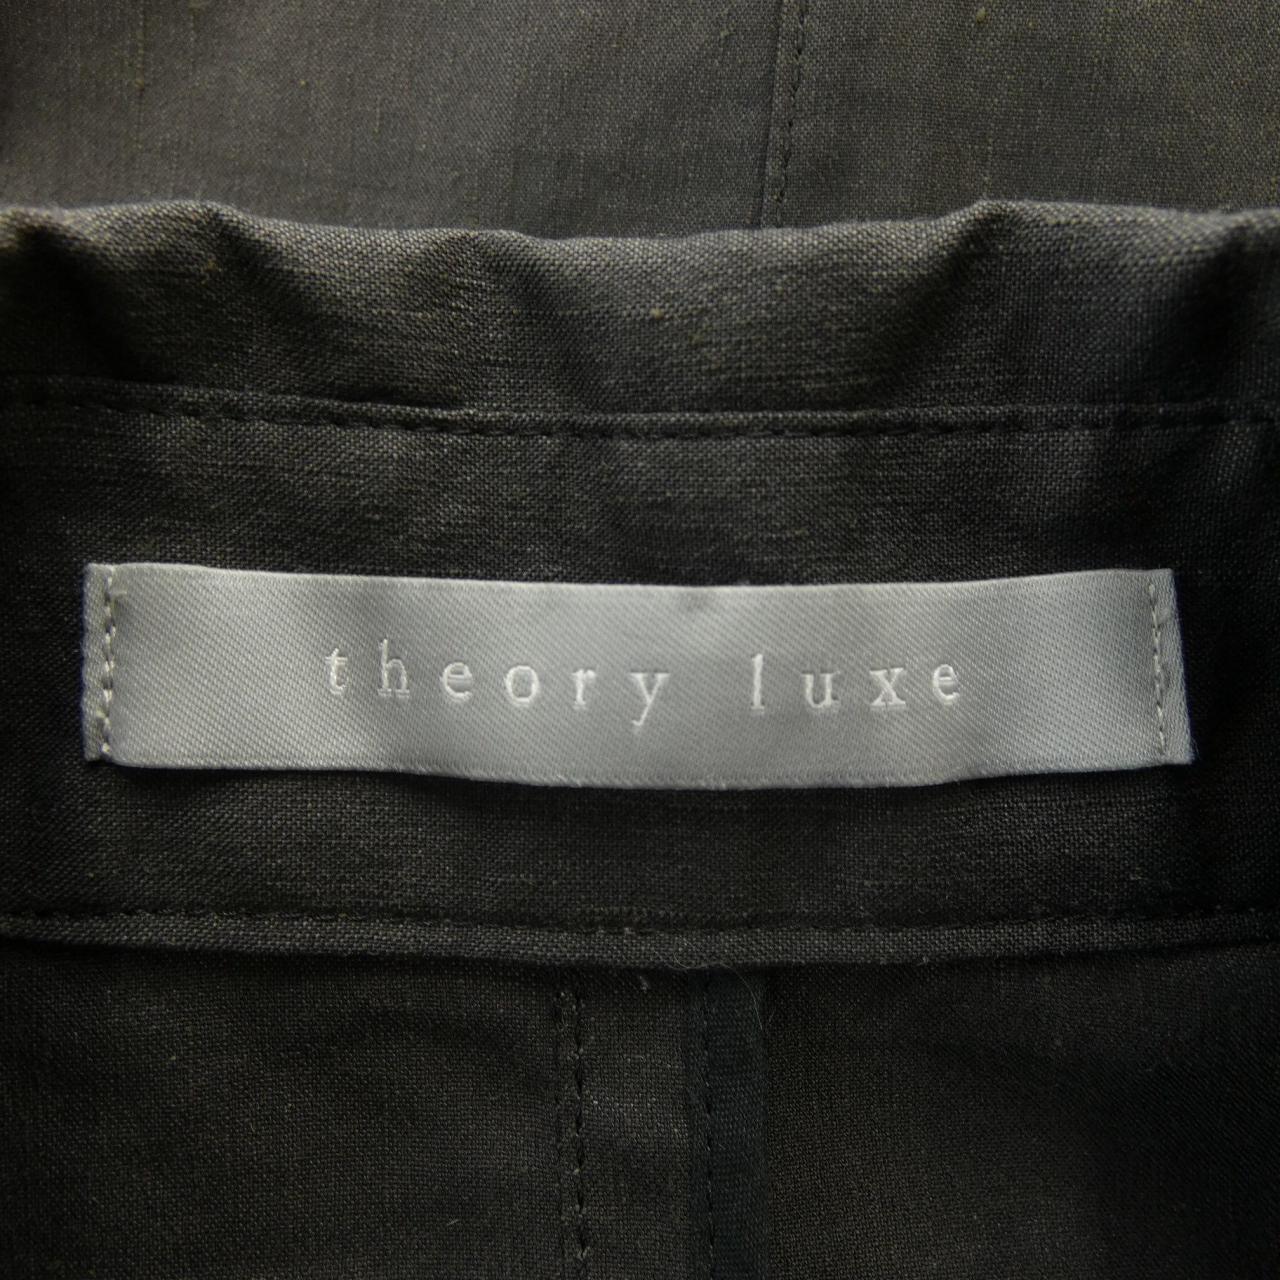 塞奧莉露Theory luxe大衣